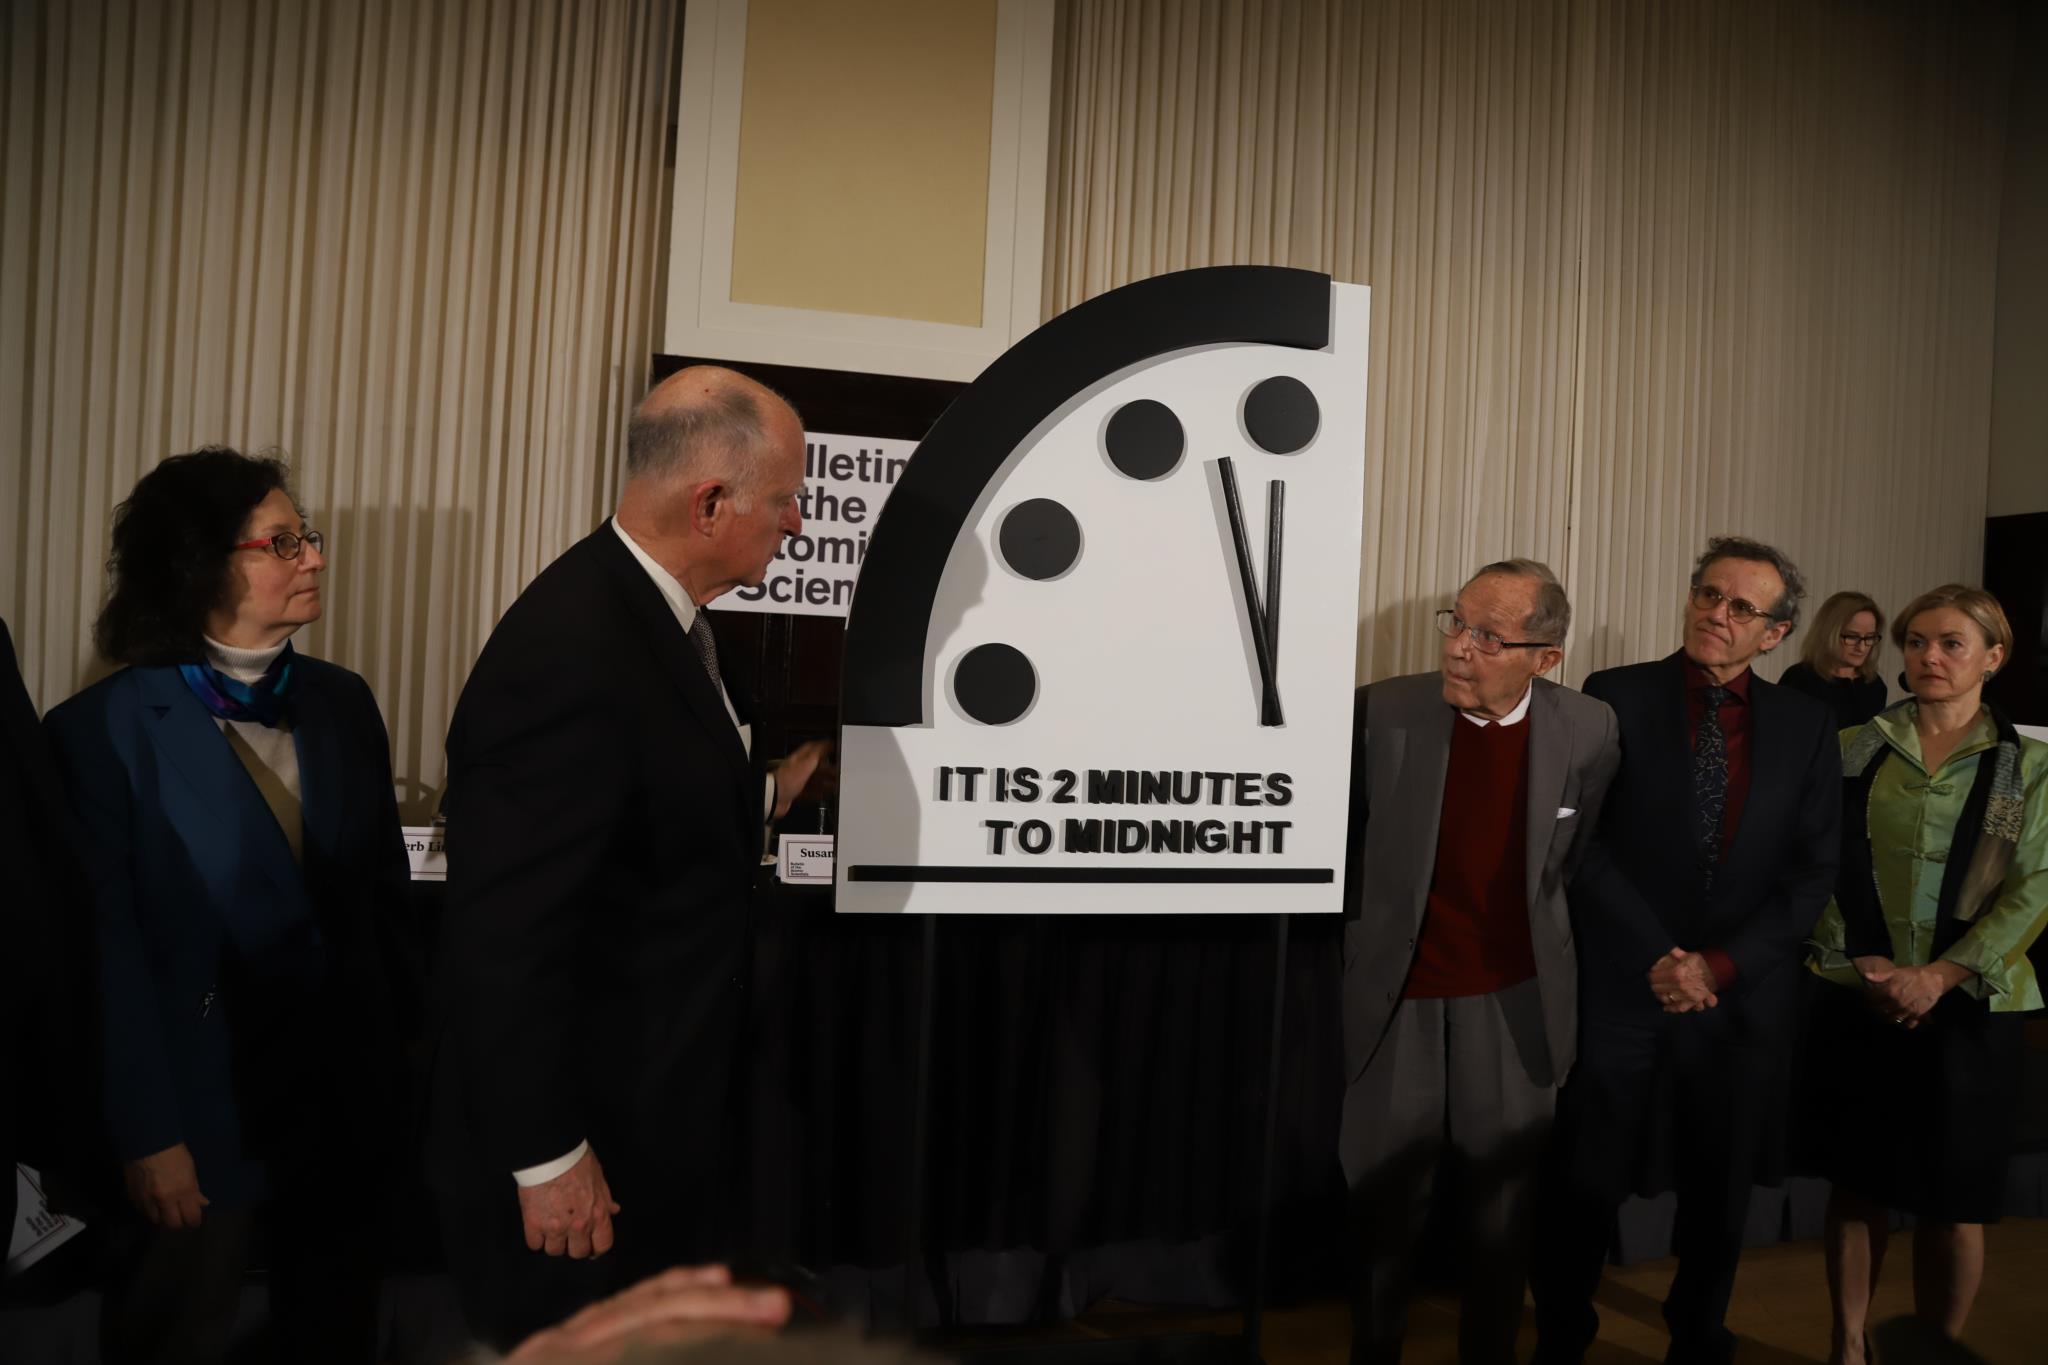 Сколько часов судного дня. Часы Судного дня 1947. «Бюллетень учёных-атомщиков» часы Судного дня. Часы до Судного дня. Часы до атомной войны.